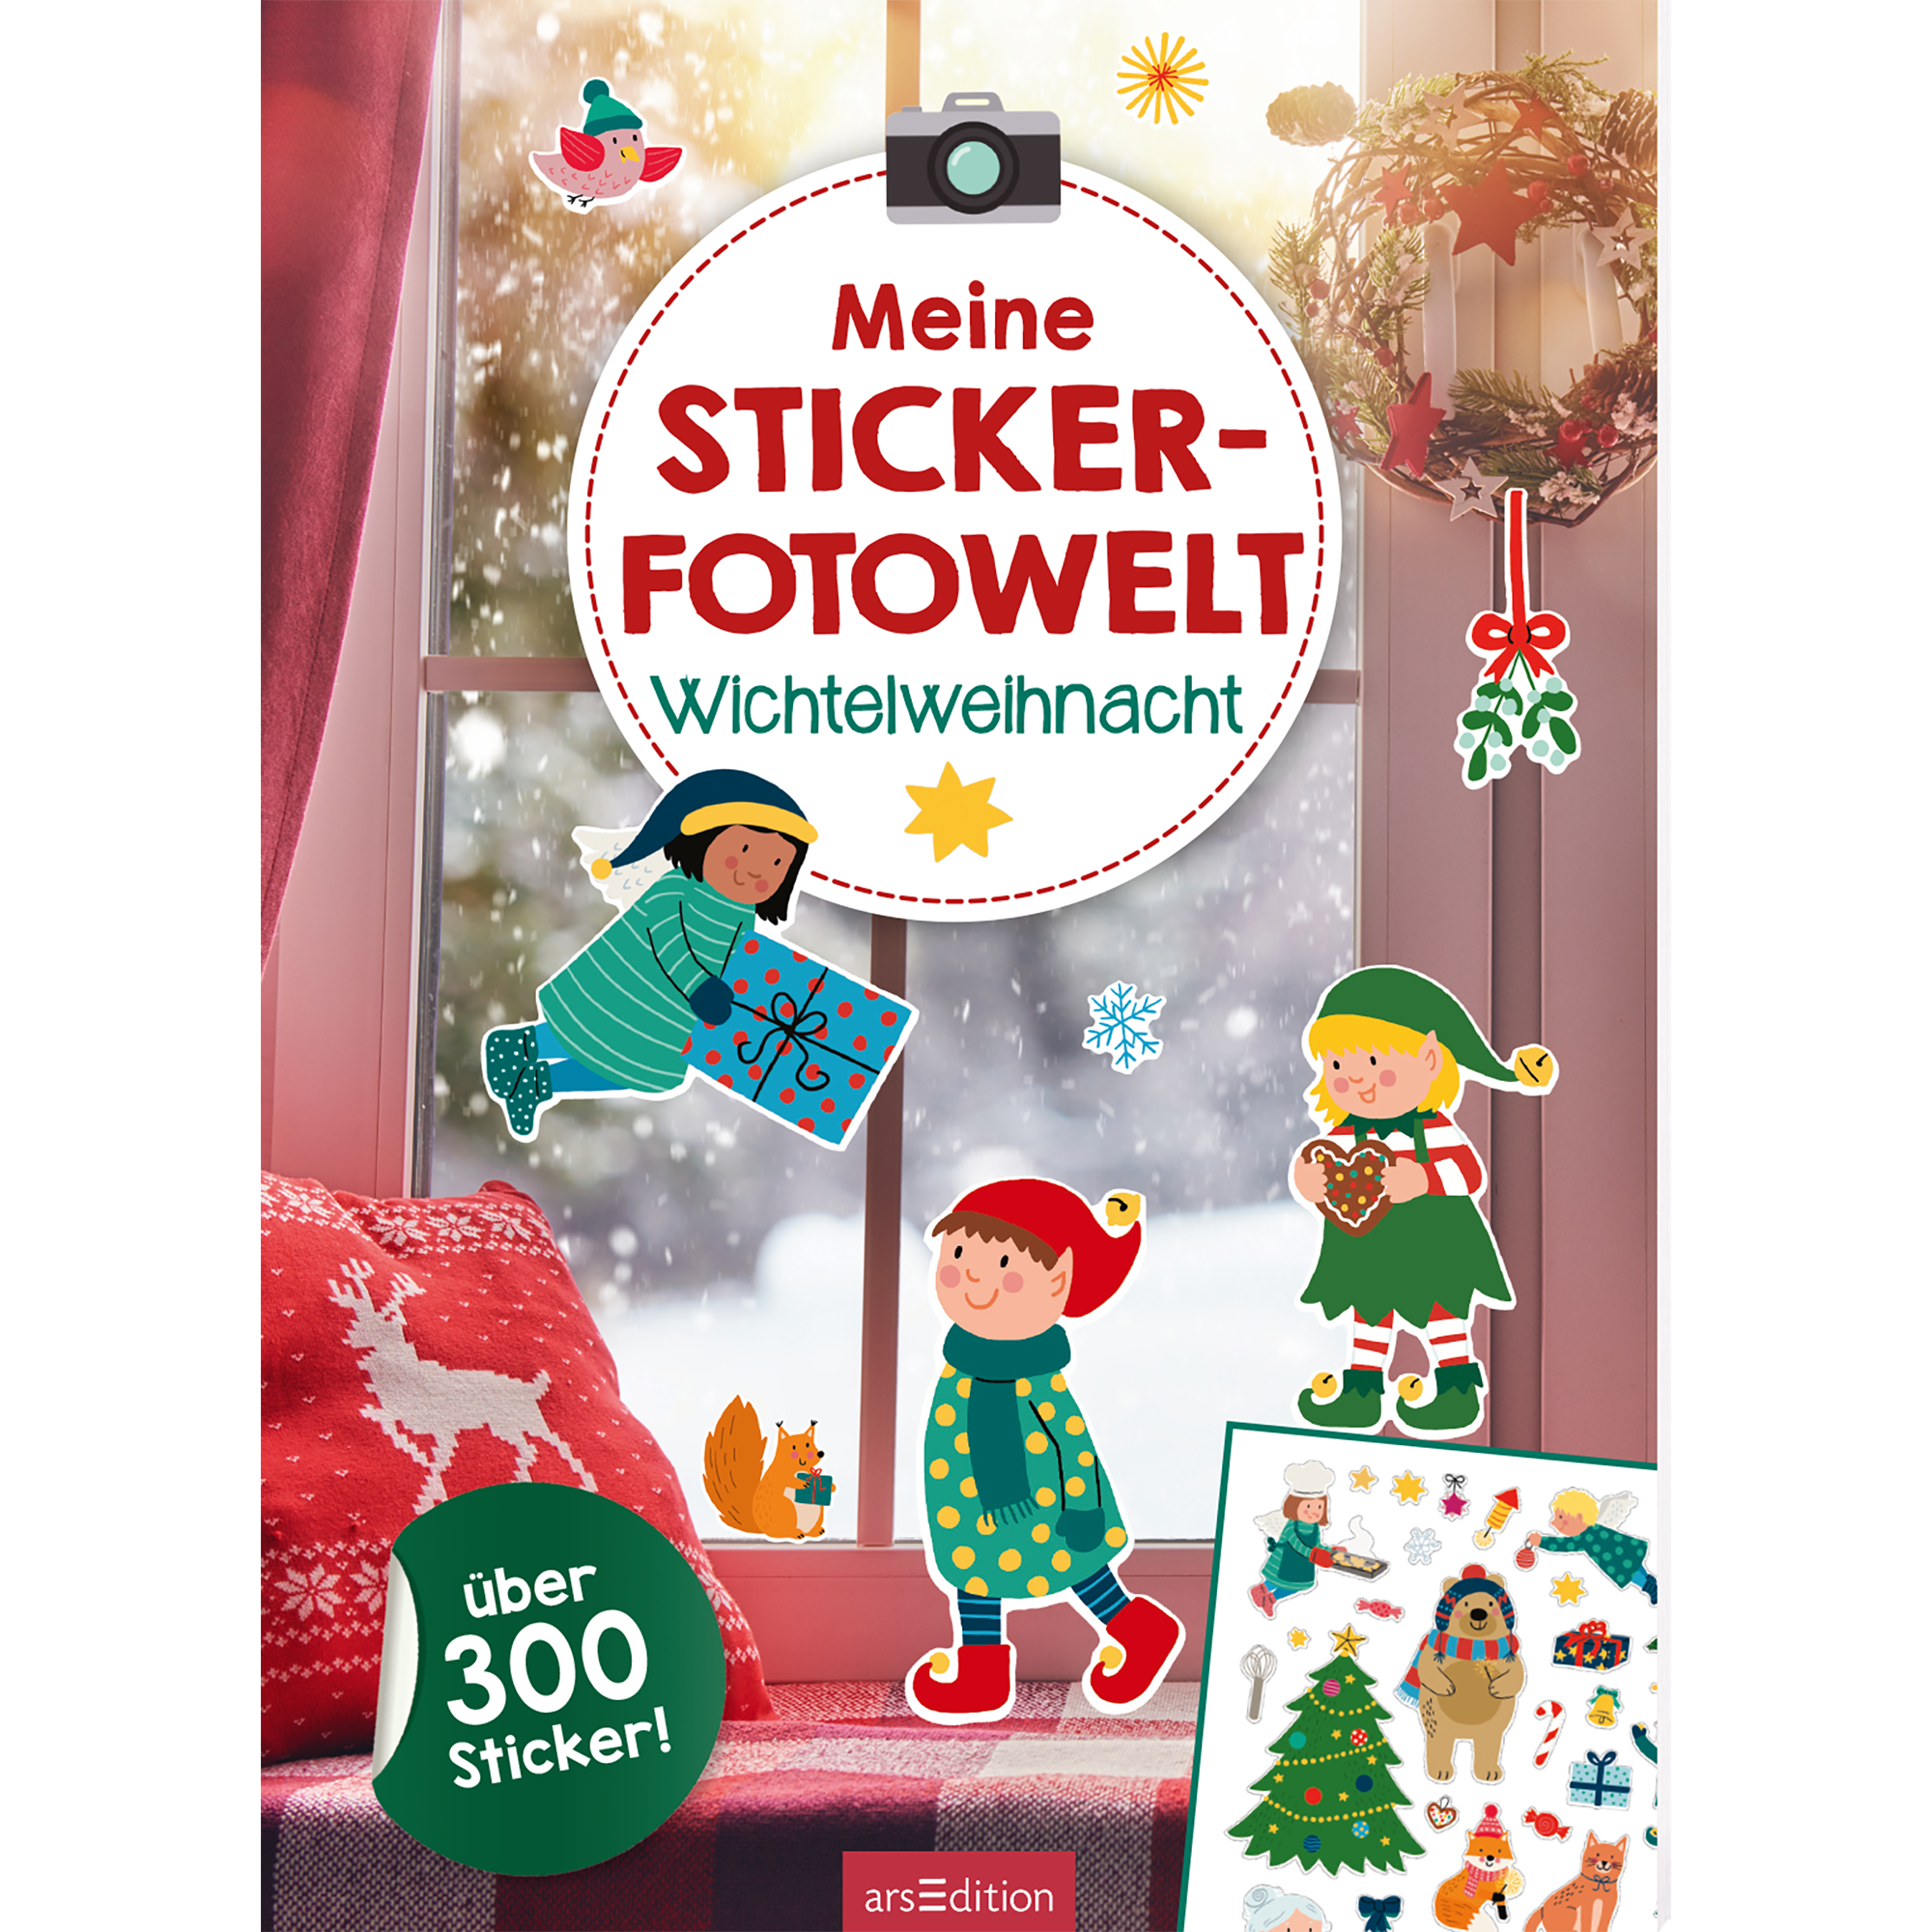 Meine Sticker-Fotowelt Wichtelweihnacht arsEdition 2000583797401 1